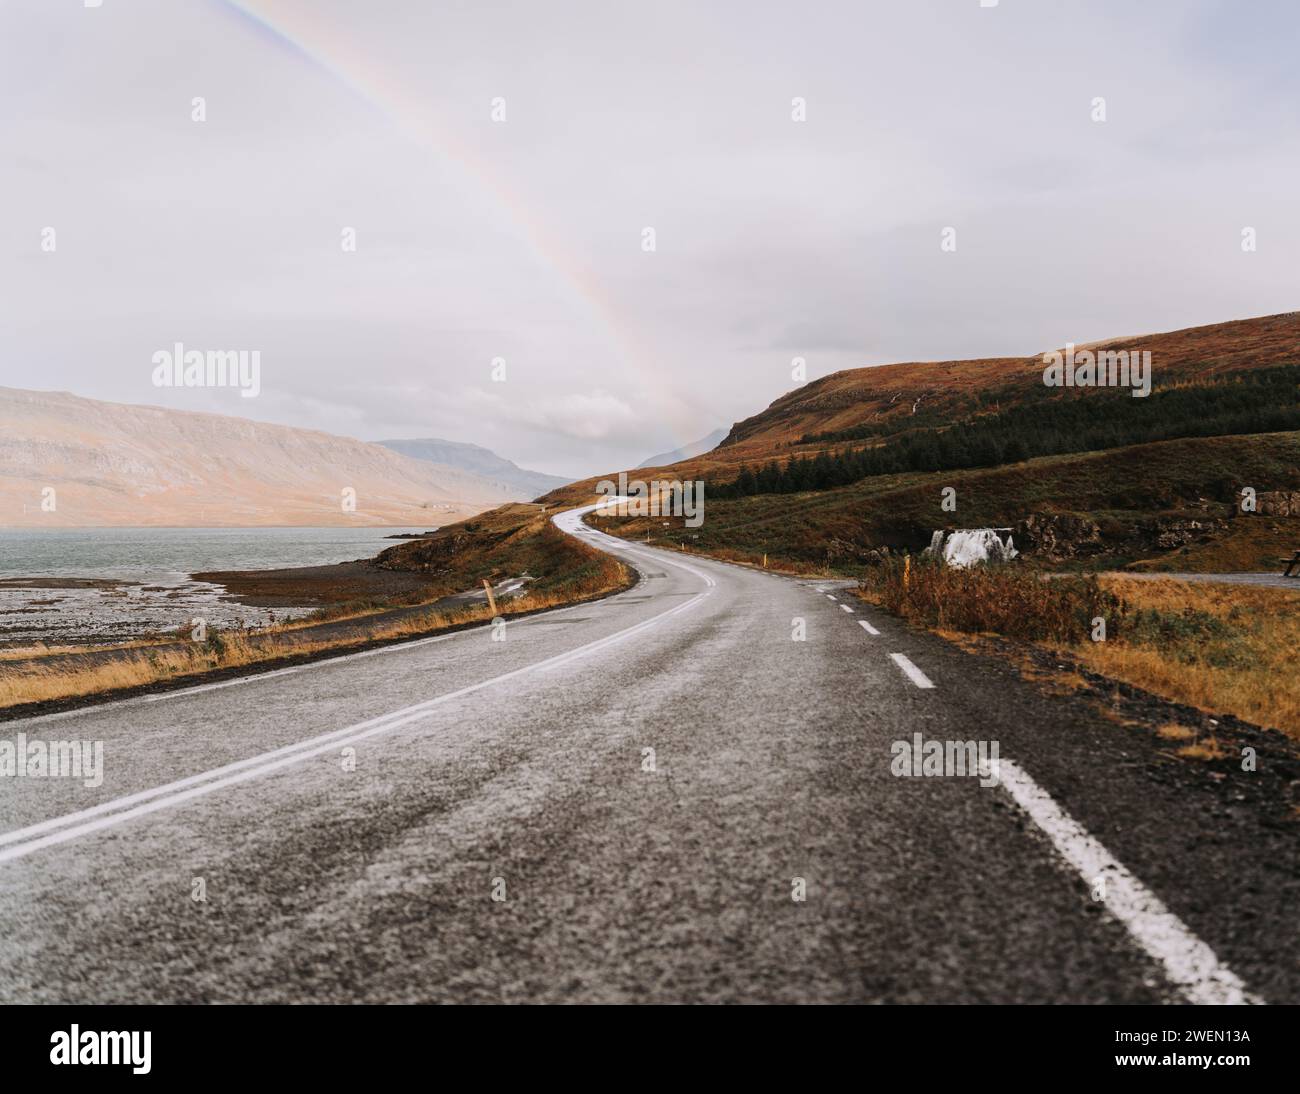 Voyage serein : route majestueuse dans la nature islandaise Banque D'Images